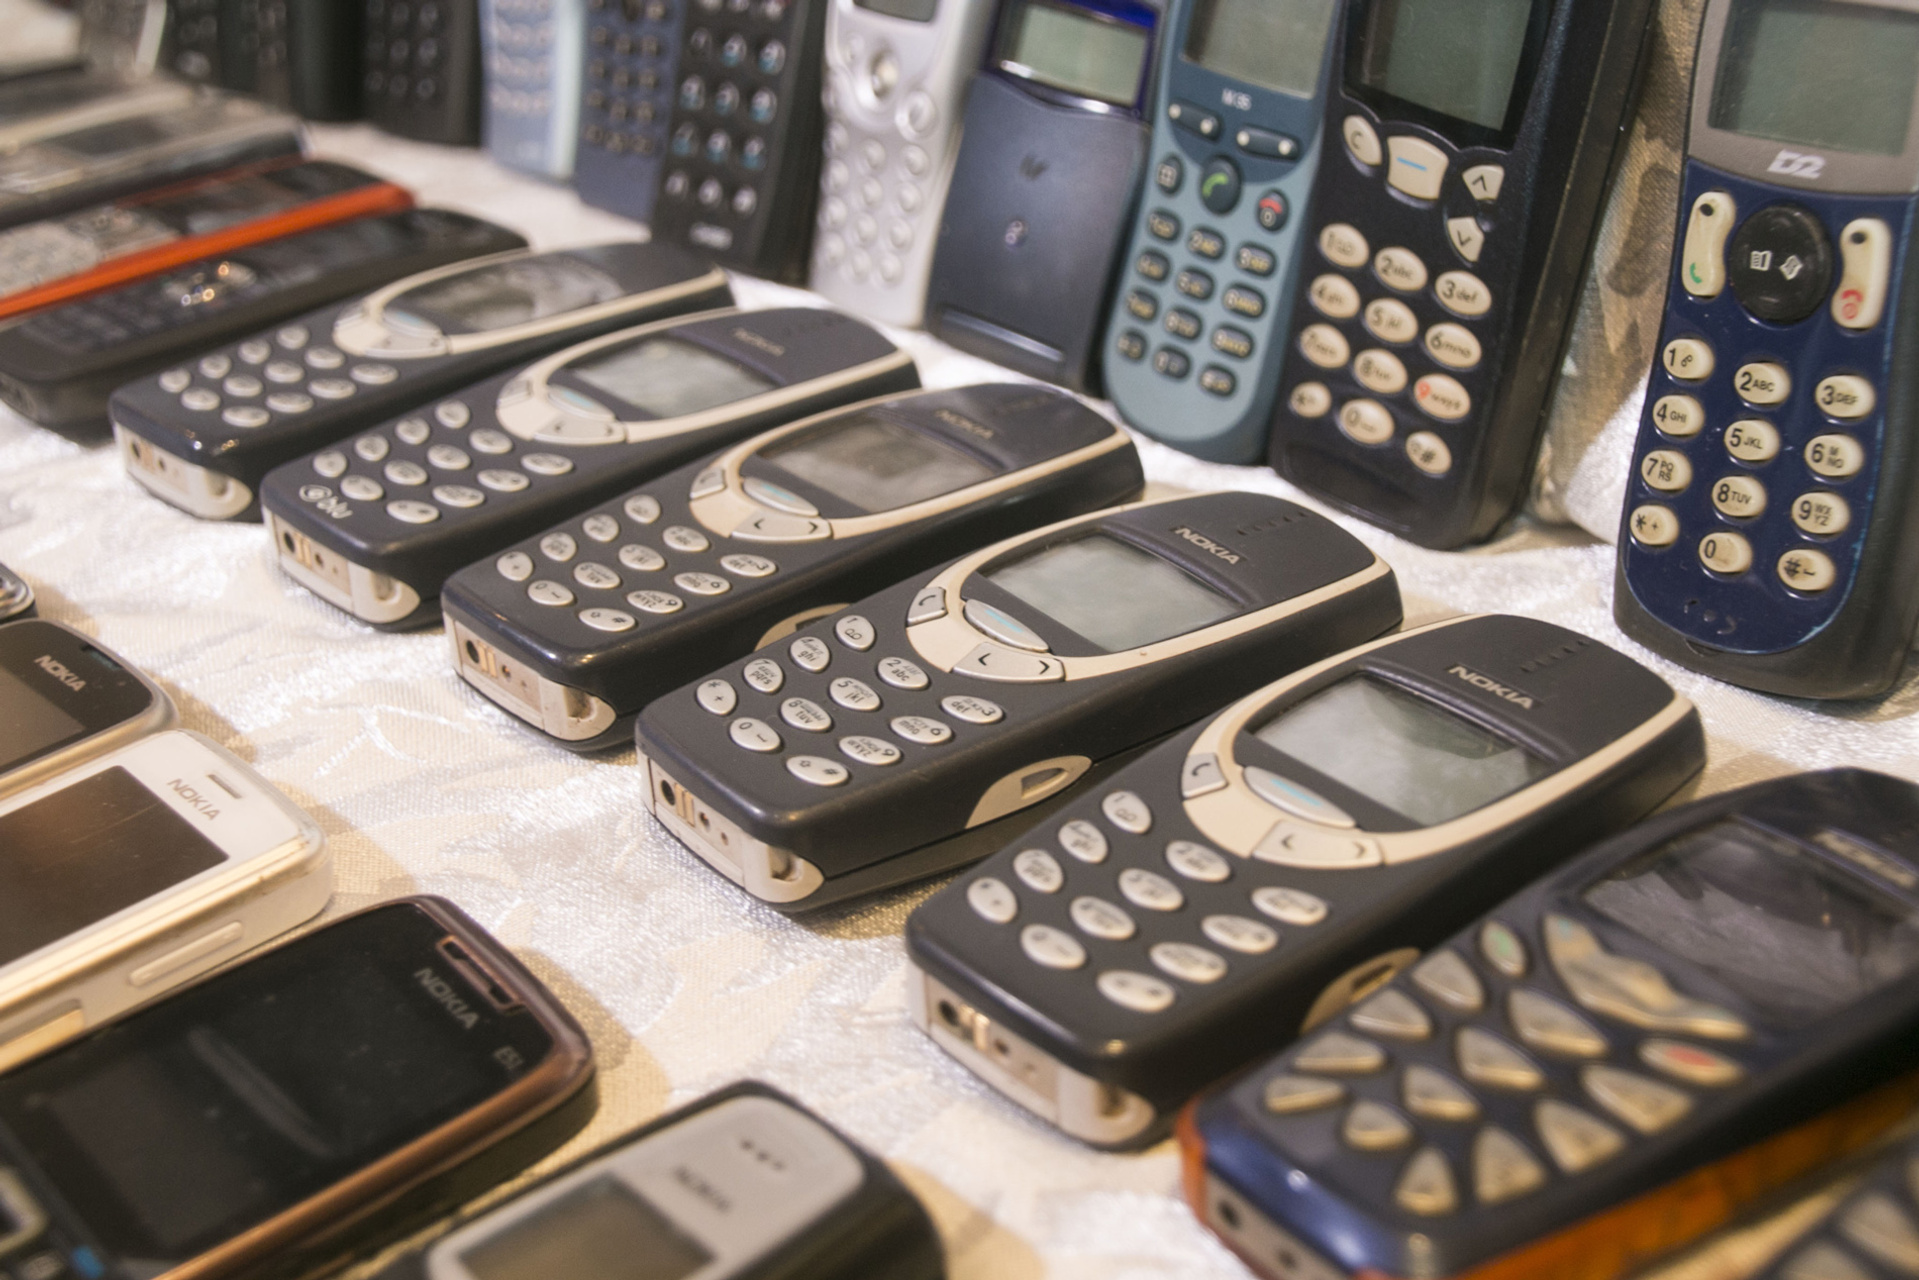 Легендарная Nokia 3310 имеется сразу в нескольких экземплярах